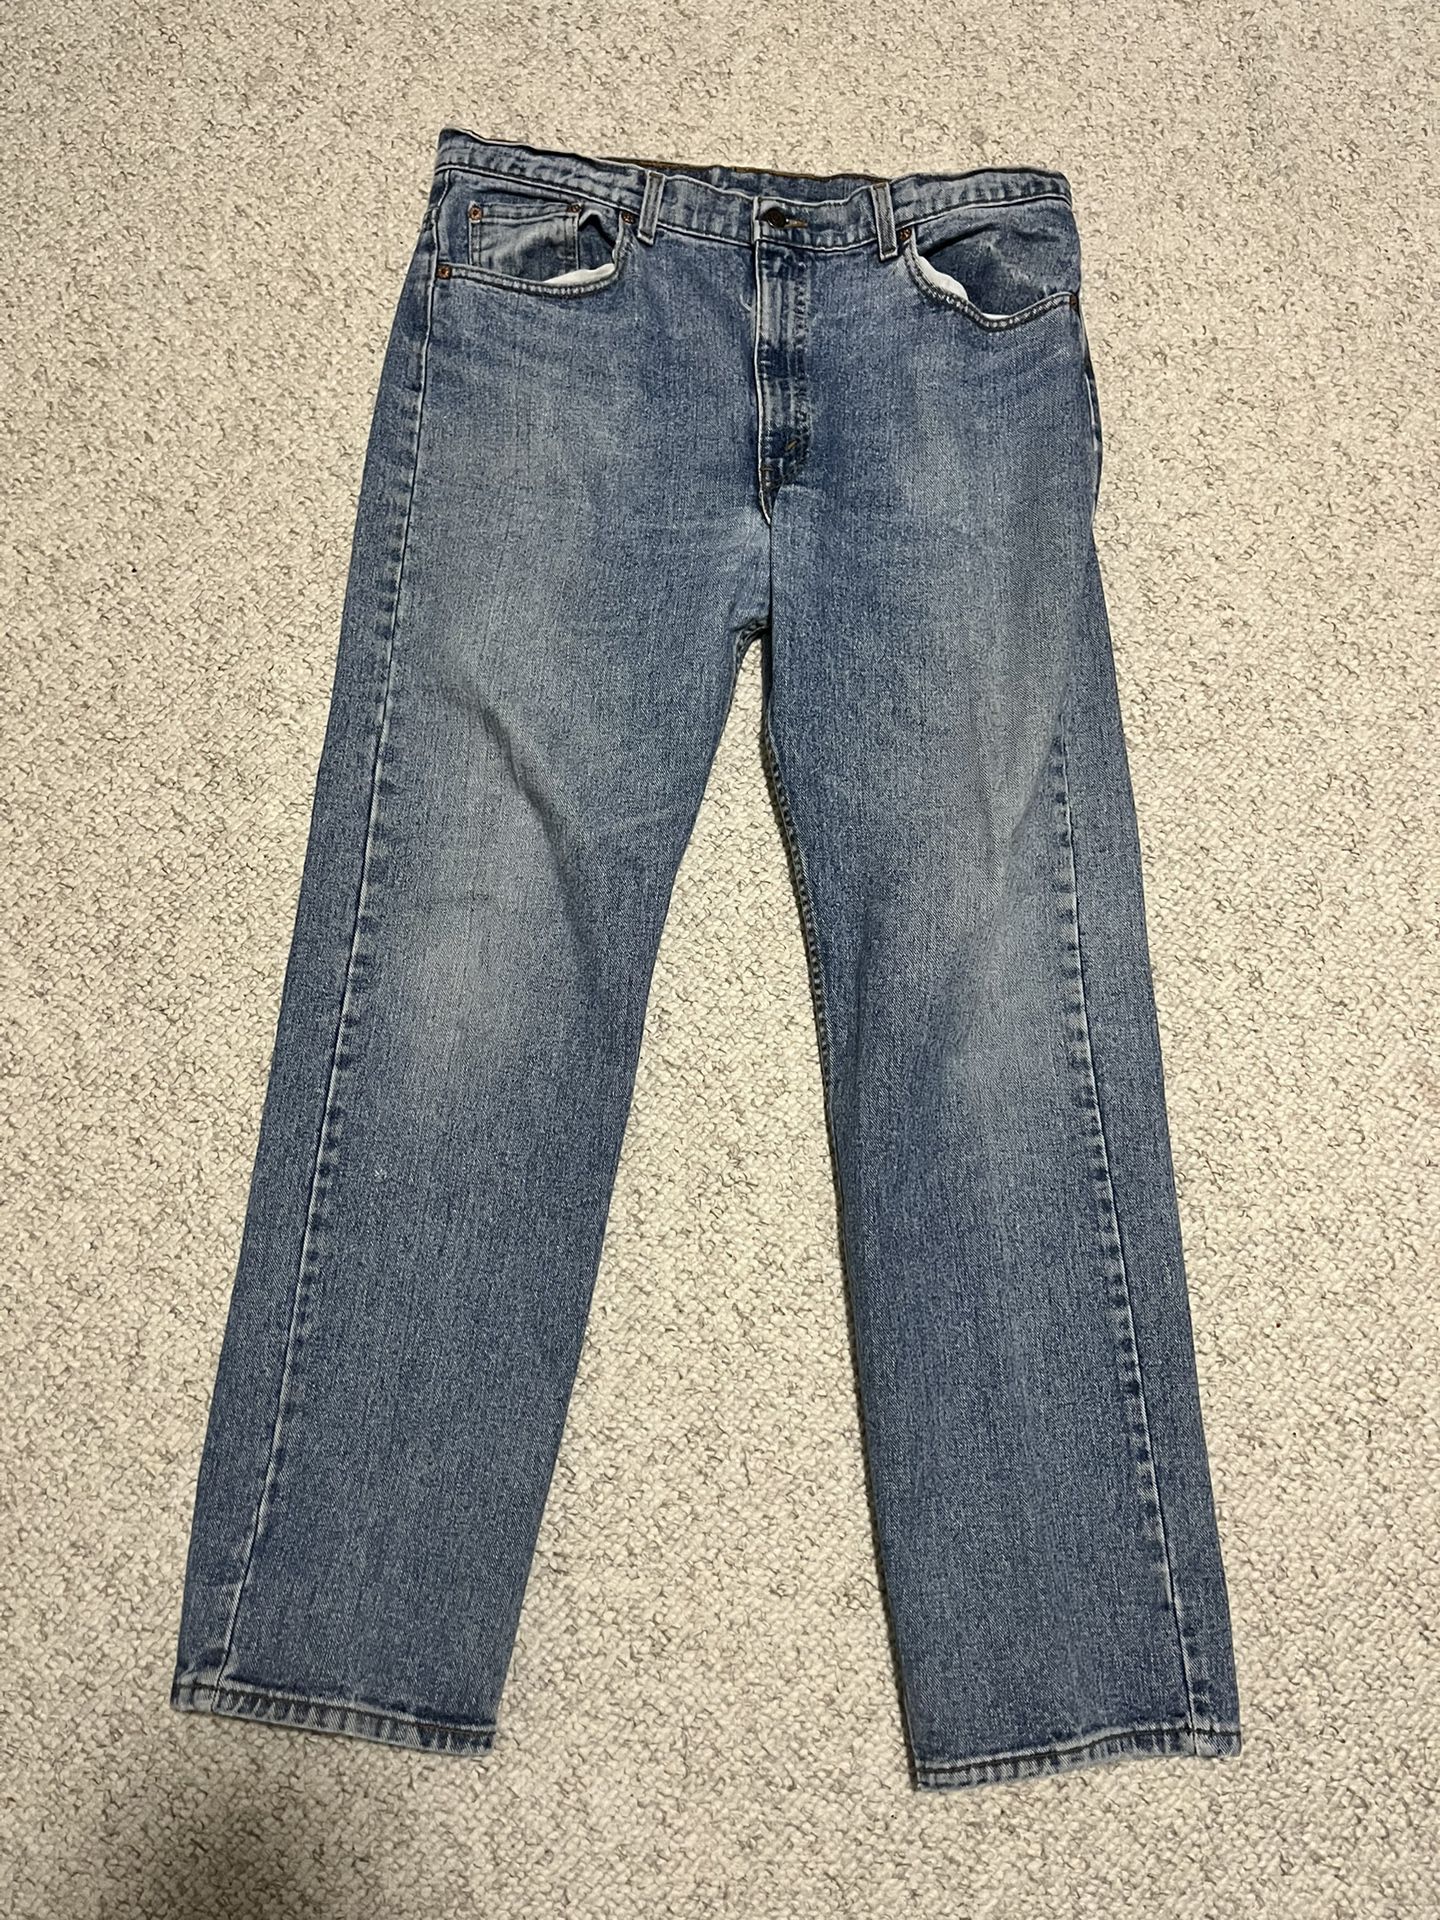 Levi’s 505 Men’s Jeans